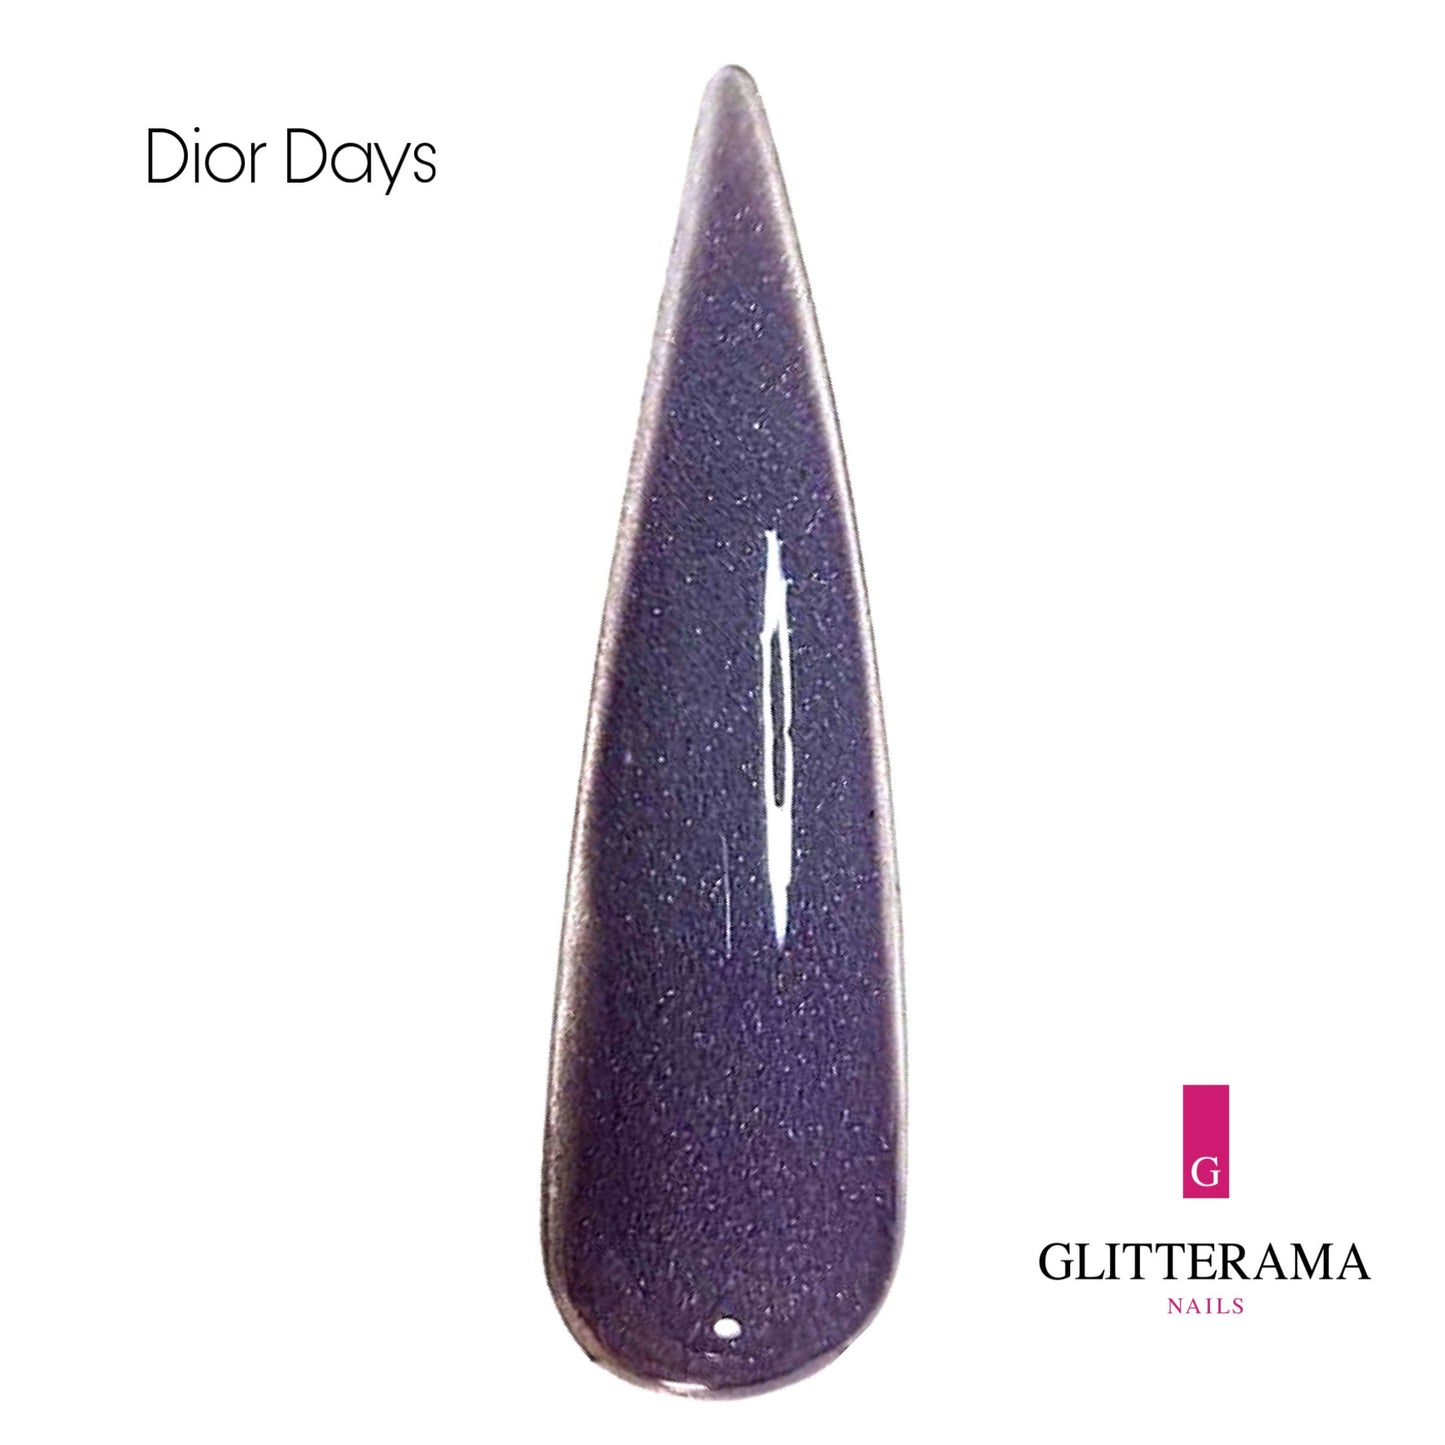 Dior Days